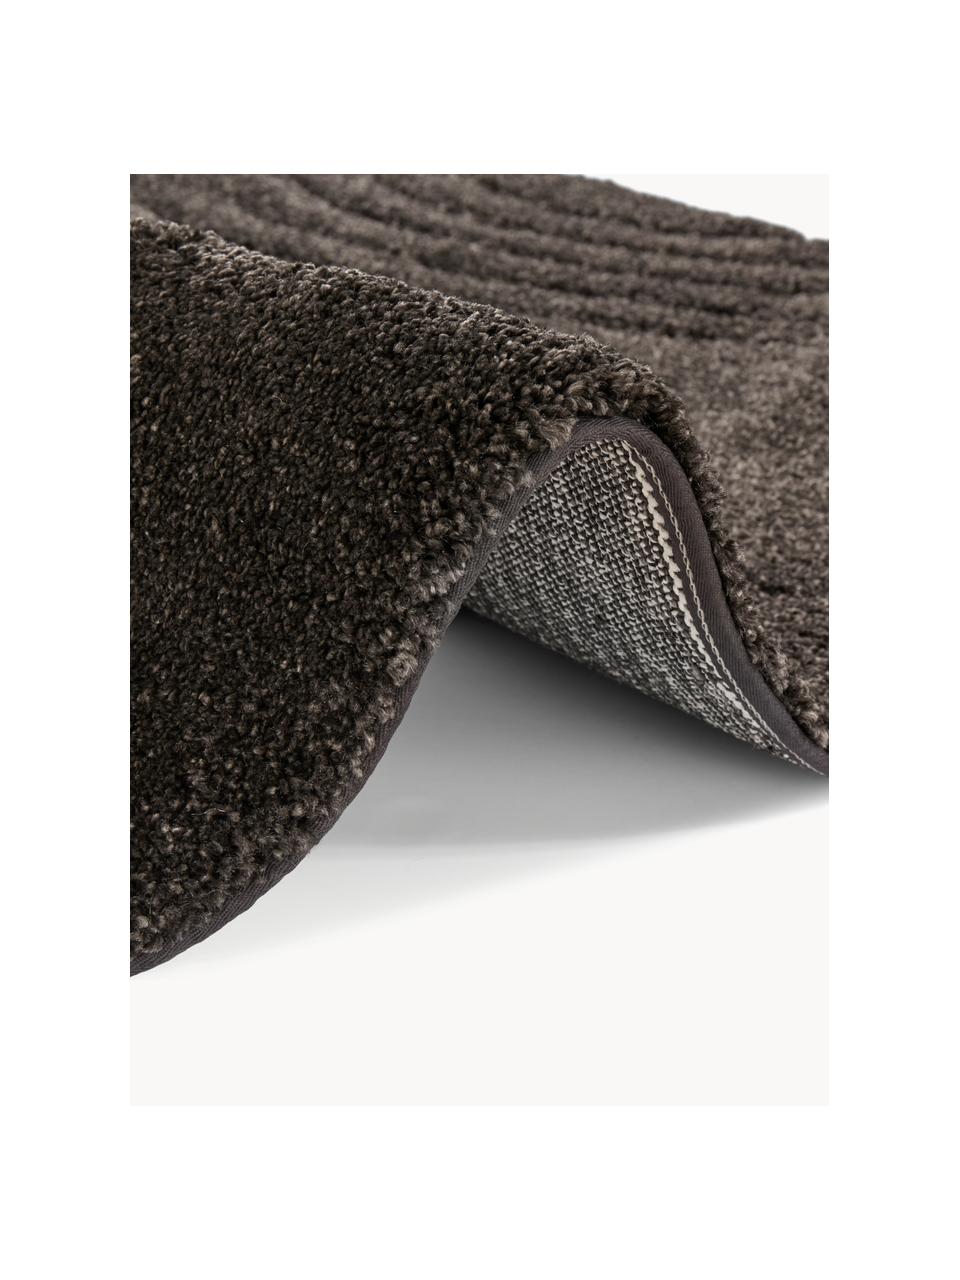 Runder Hochflor-Teppich Norwalk mit geometrischem Muster, 100 % Polypropylen, Schwarz, Ø 160 (Grösse L)